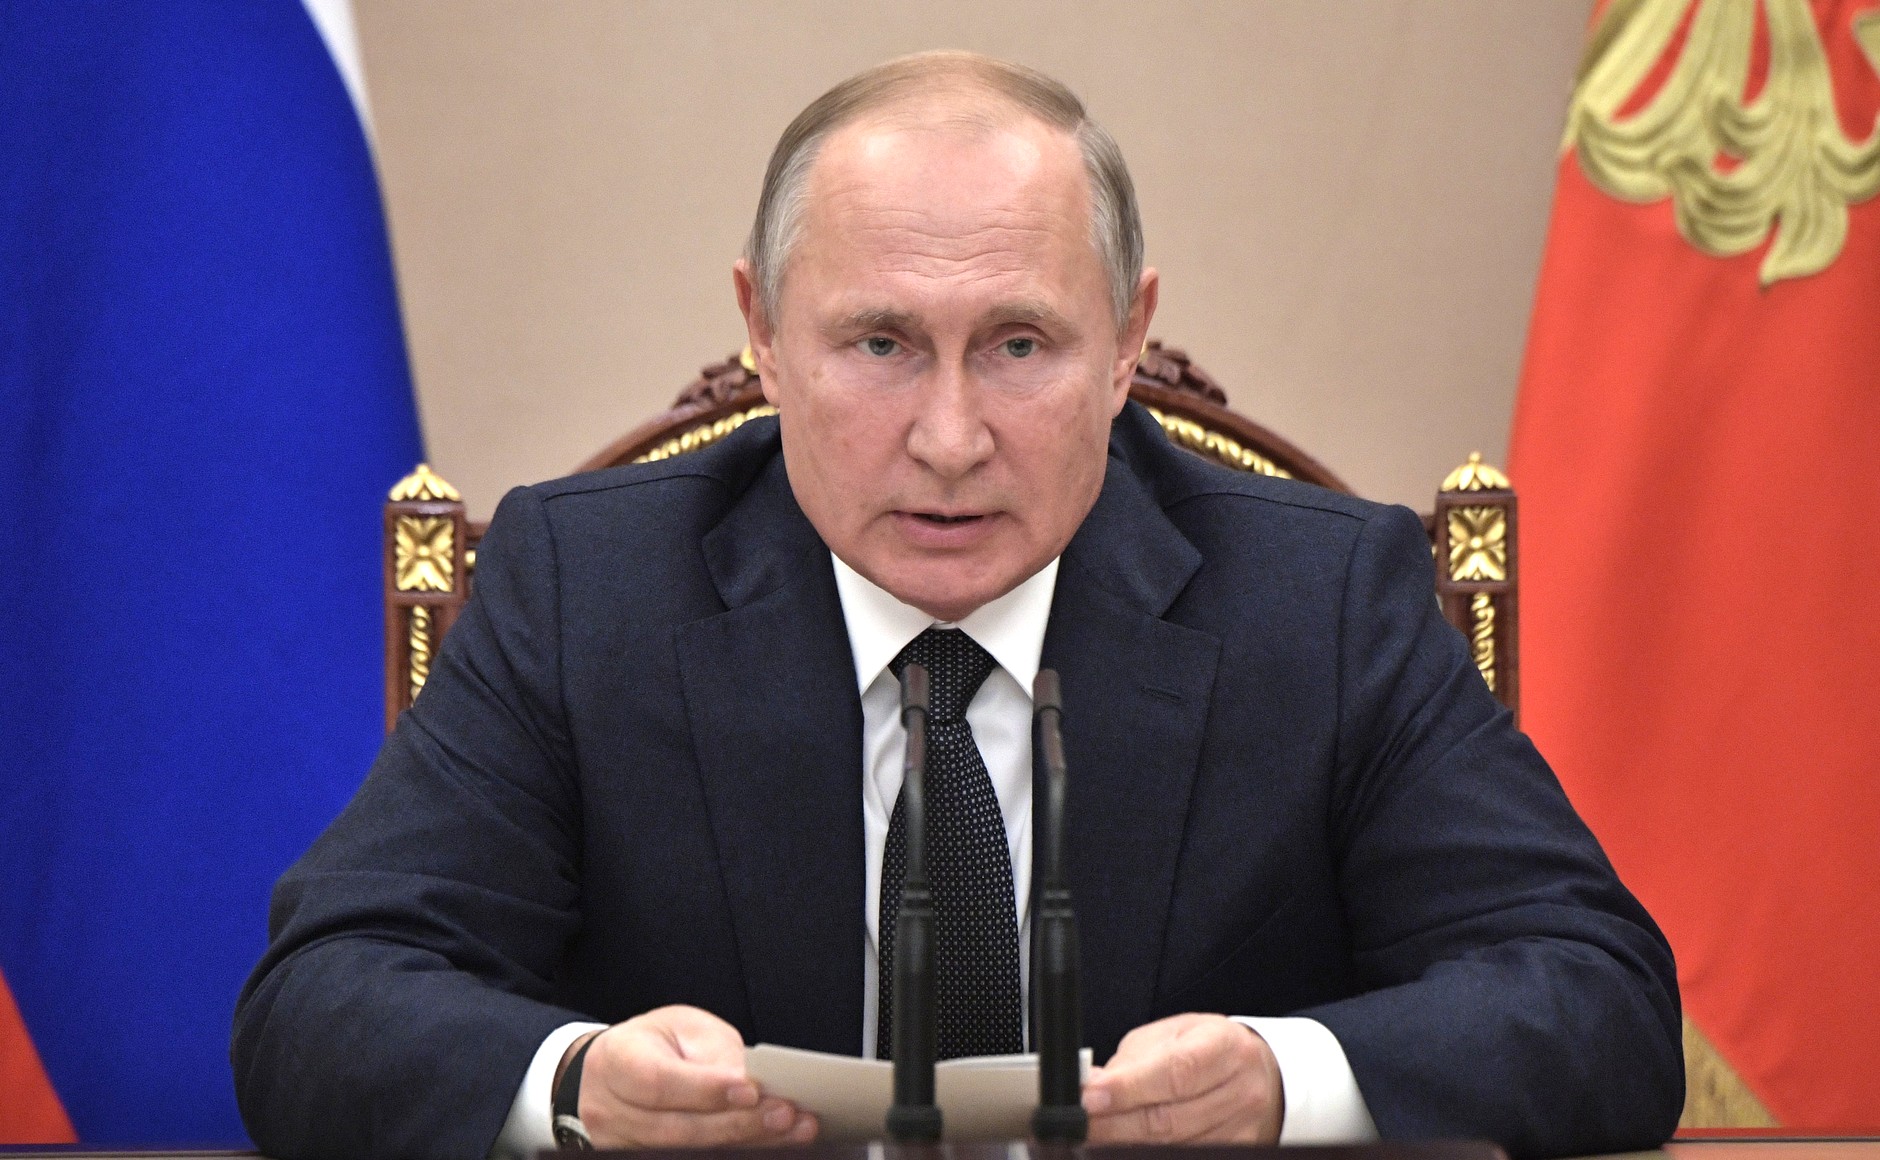 Путин перенес голосование по поправкам в Конституцию